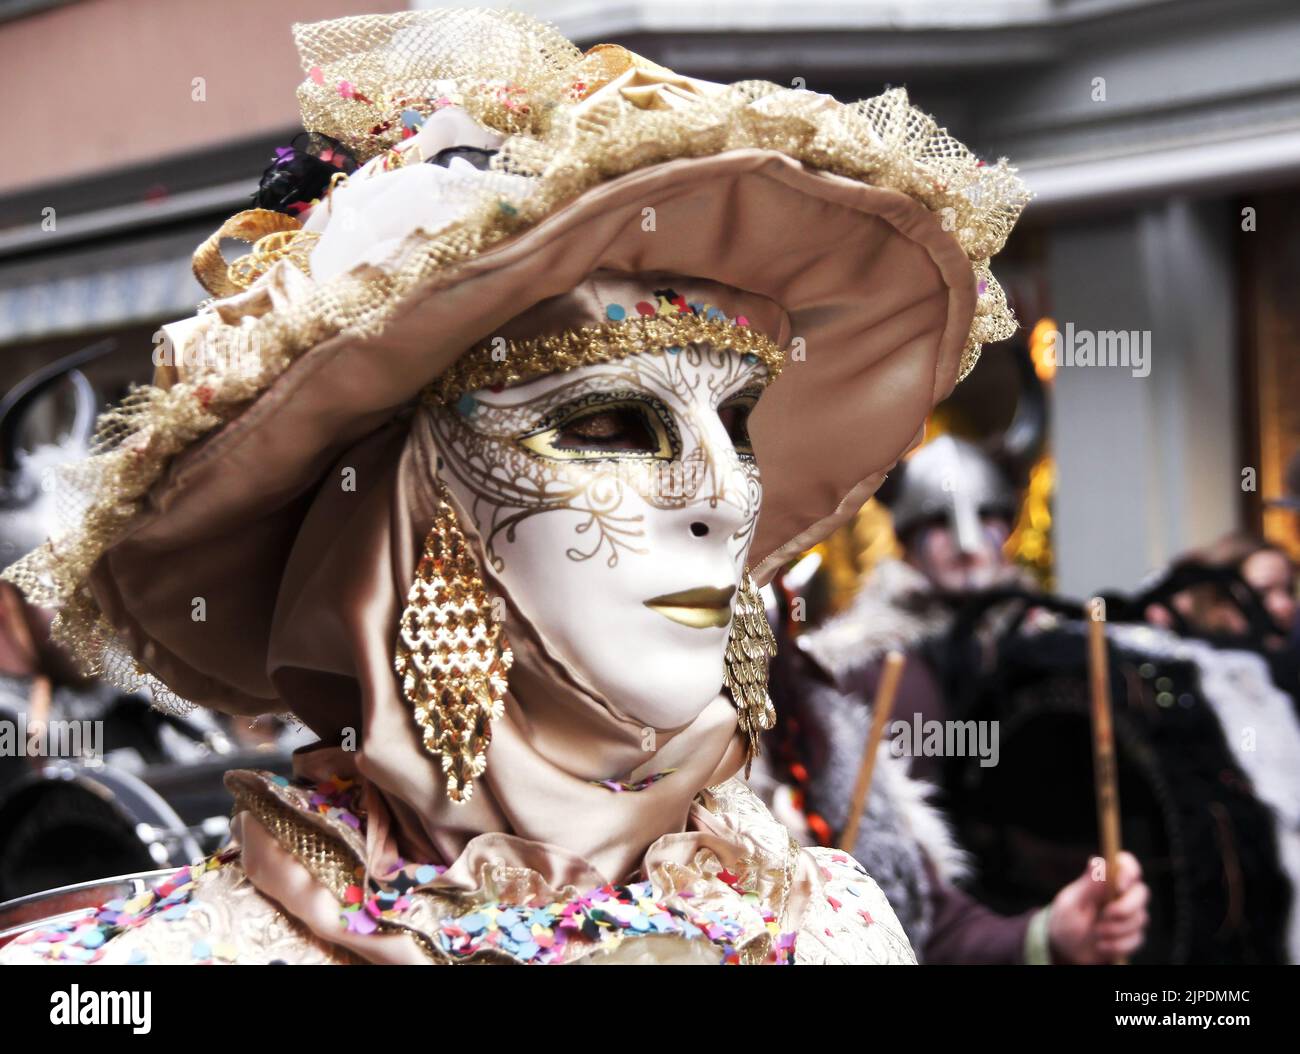 SCHAFFHAUSEN, SCHWEIZ: 22. FEBRUAR 2014, Figur gekleidet in elegante Dame mit venezianischer Maske in Karnevalsparade. Stockfoto